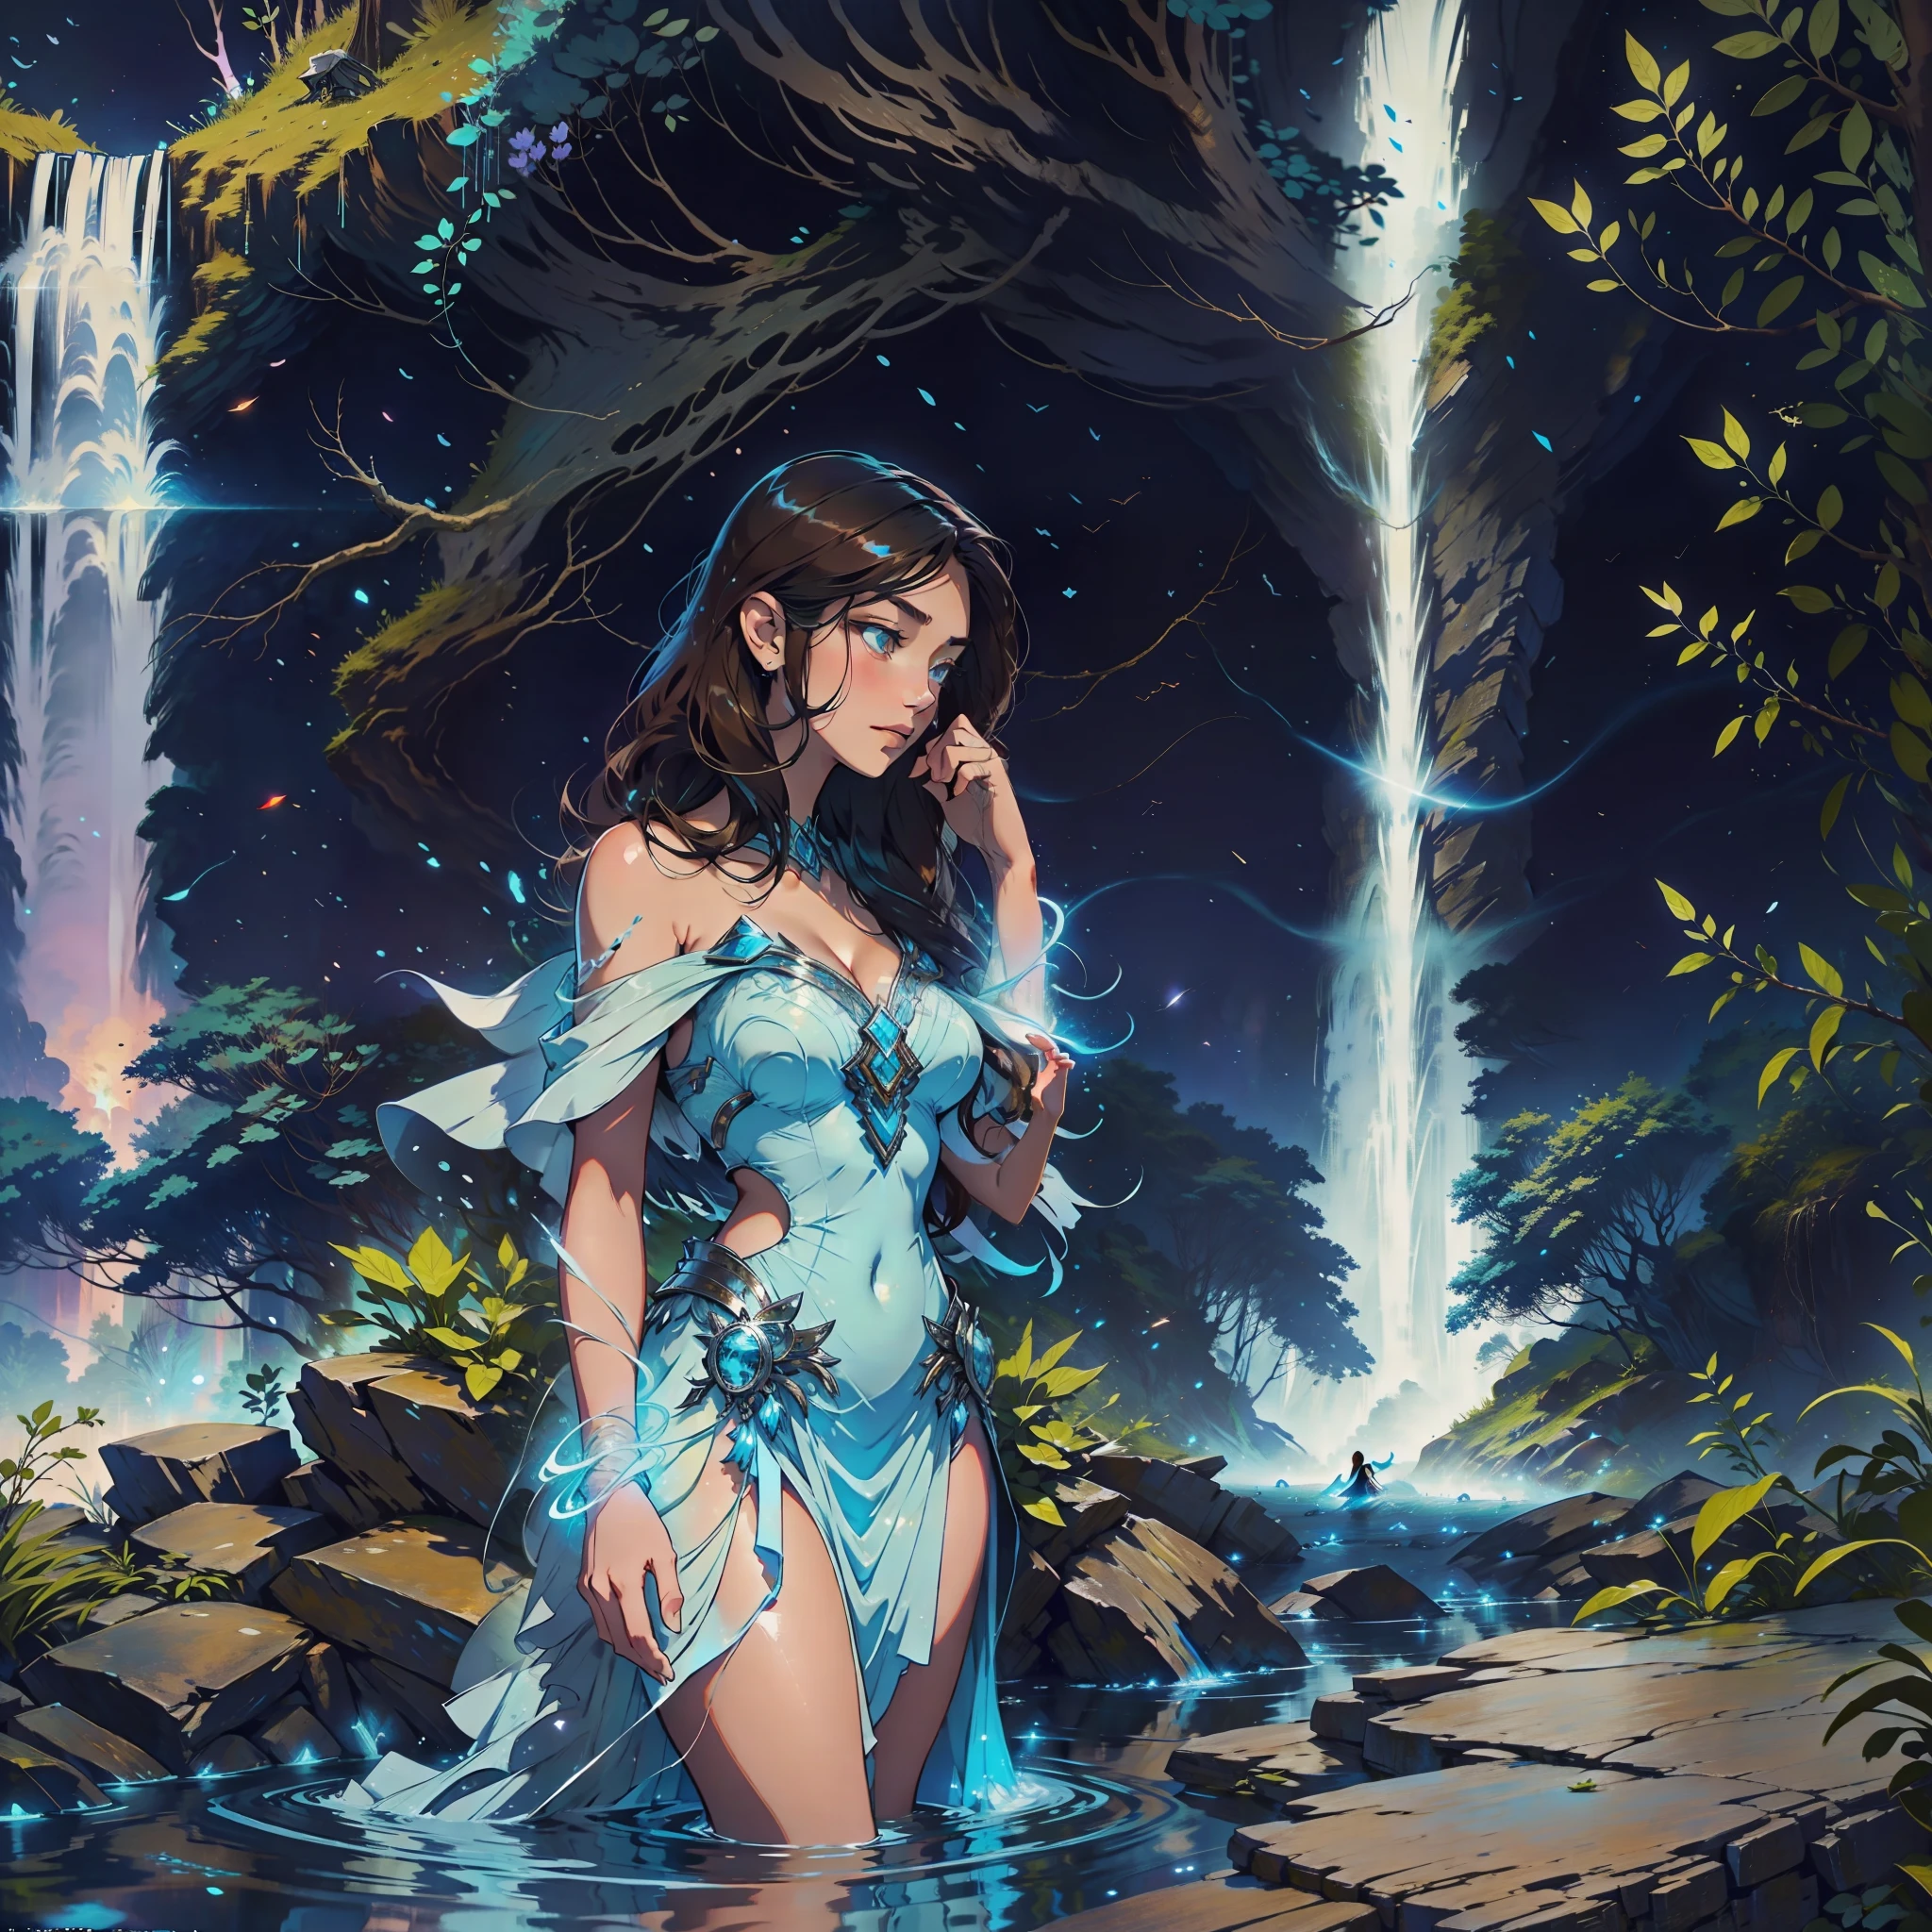 Uma mulher morena está parada em uma majestosa cachoeira que brilha em um suave tom azul enquanto cai pelo corpo da mulher que sente paz naquele lugar